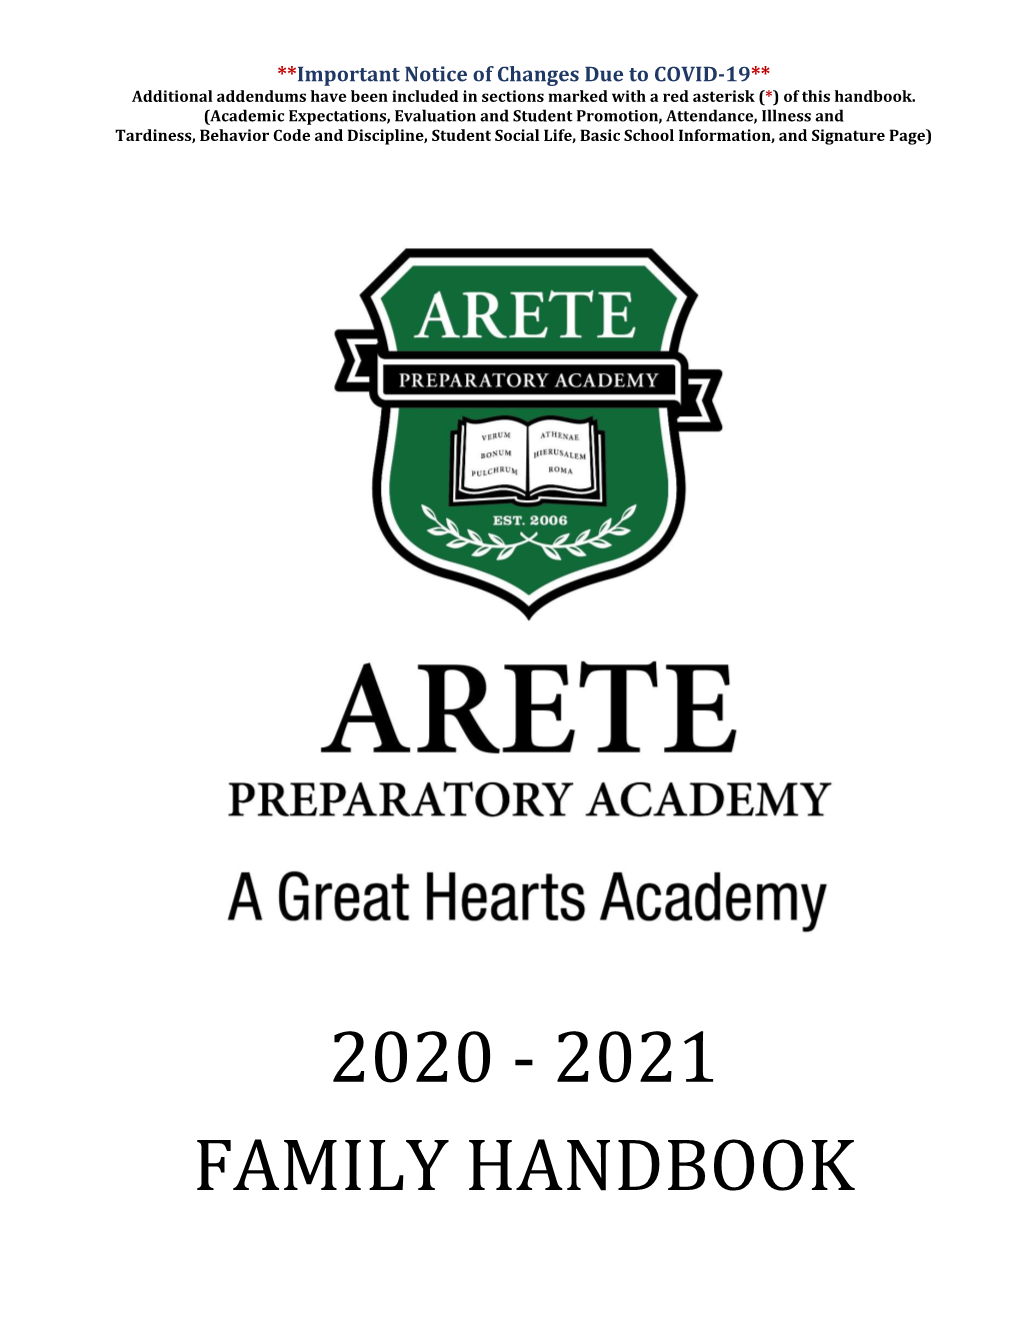 2020-2021 Family Handbook for Arete Prep